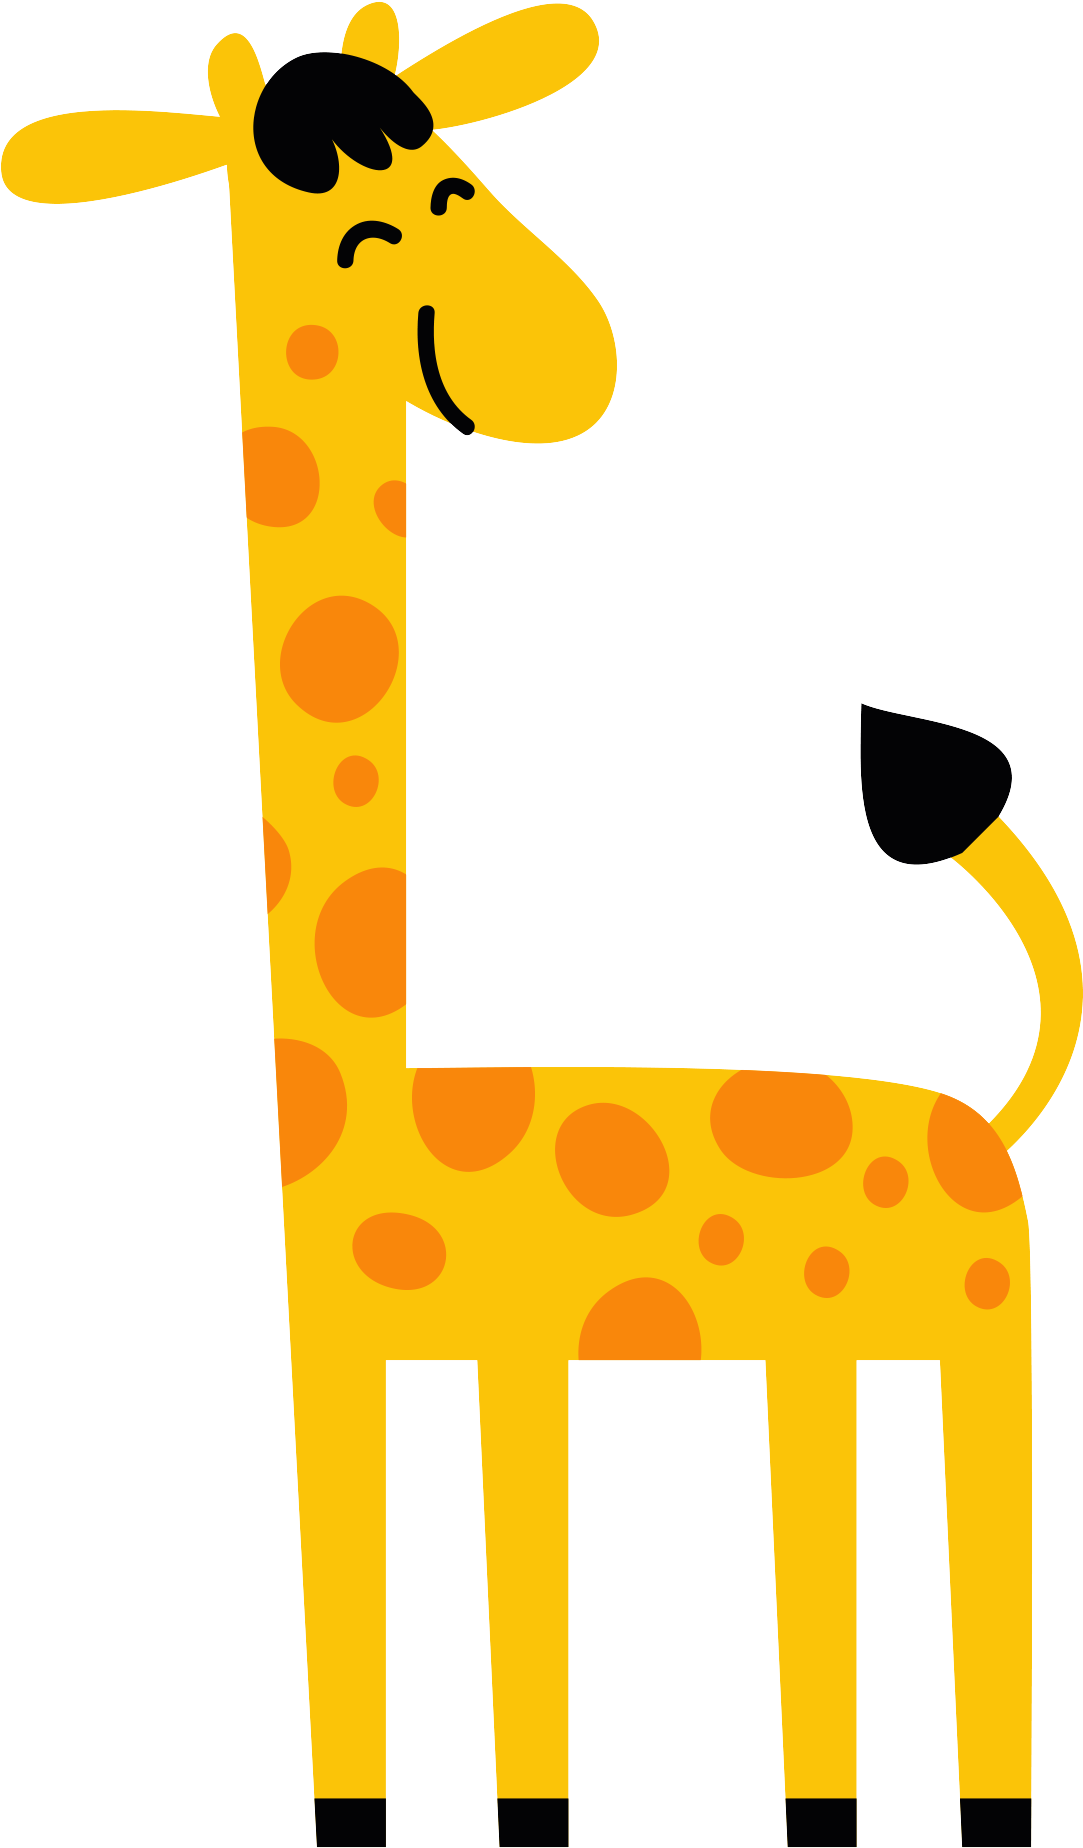 Northern Giraffe Cartoon - Hươu Cao Cổ Hoạt Hình (2362x2362)